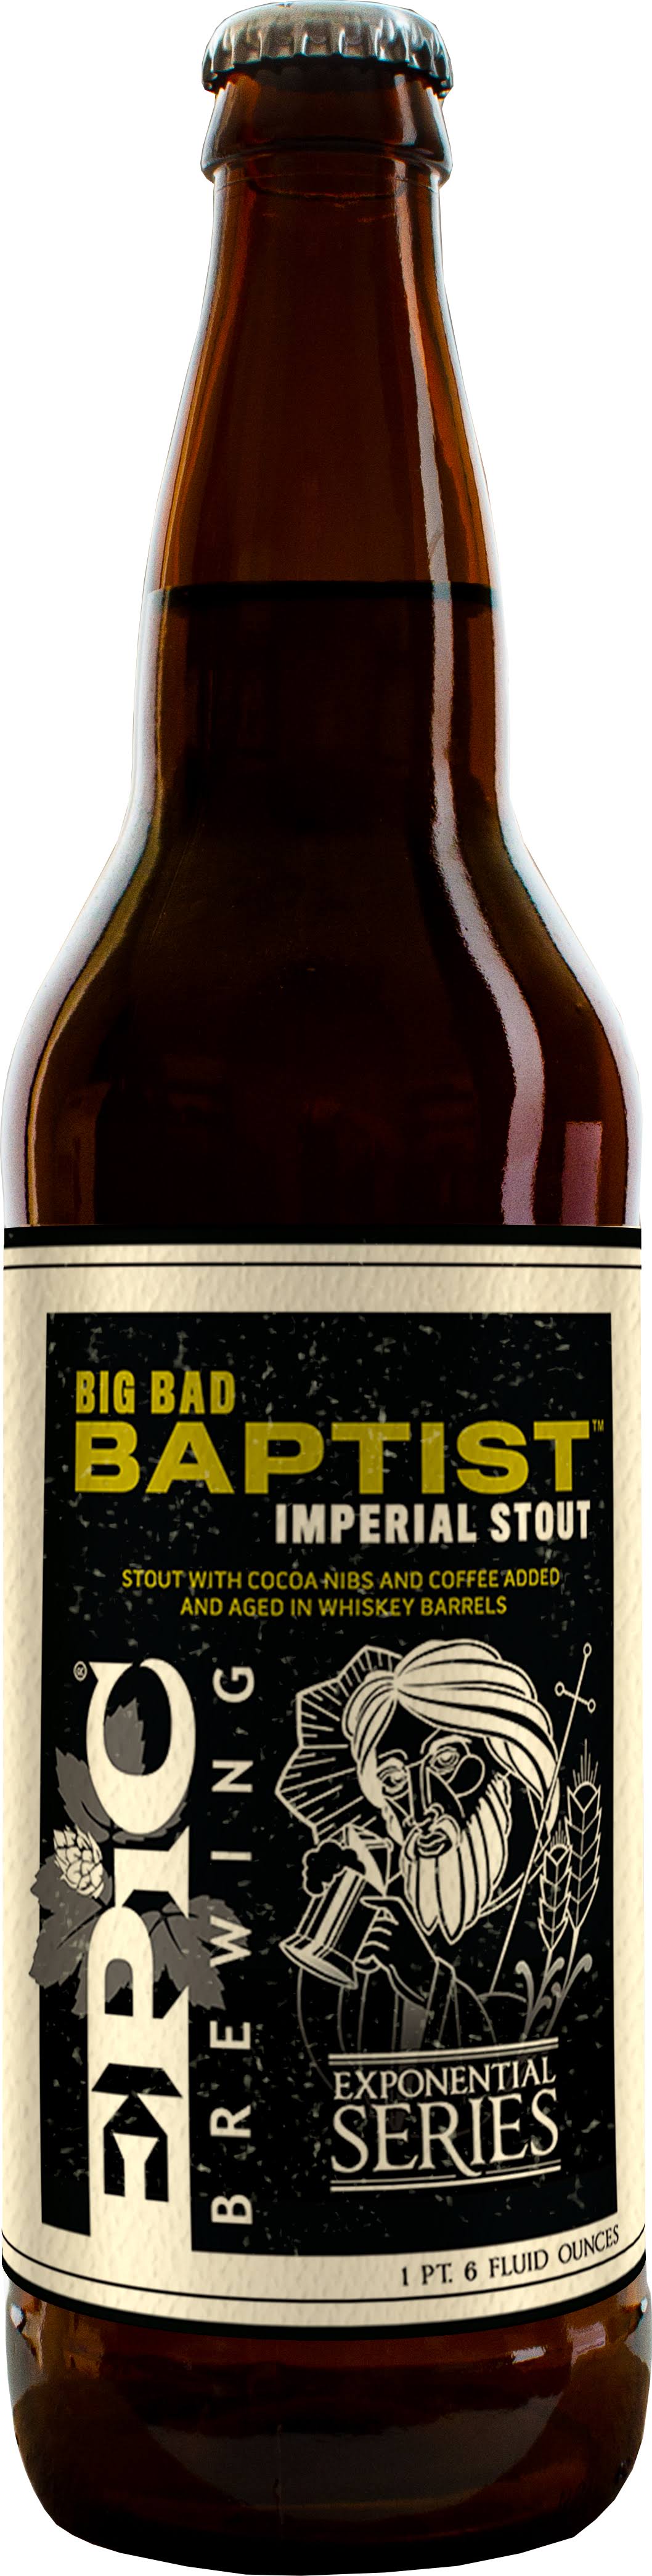 Epic Brewing Big Bad Baptist. Beer, Imperial Stout - 1 pt 6 fl oz